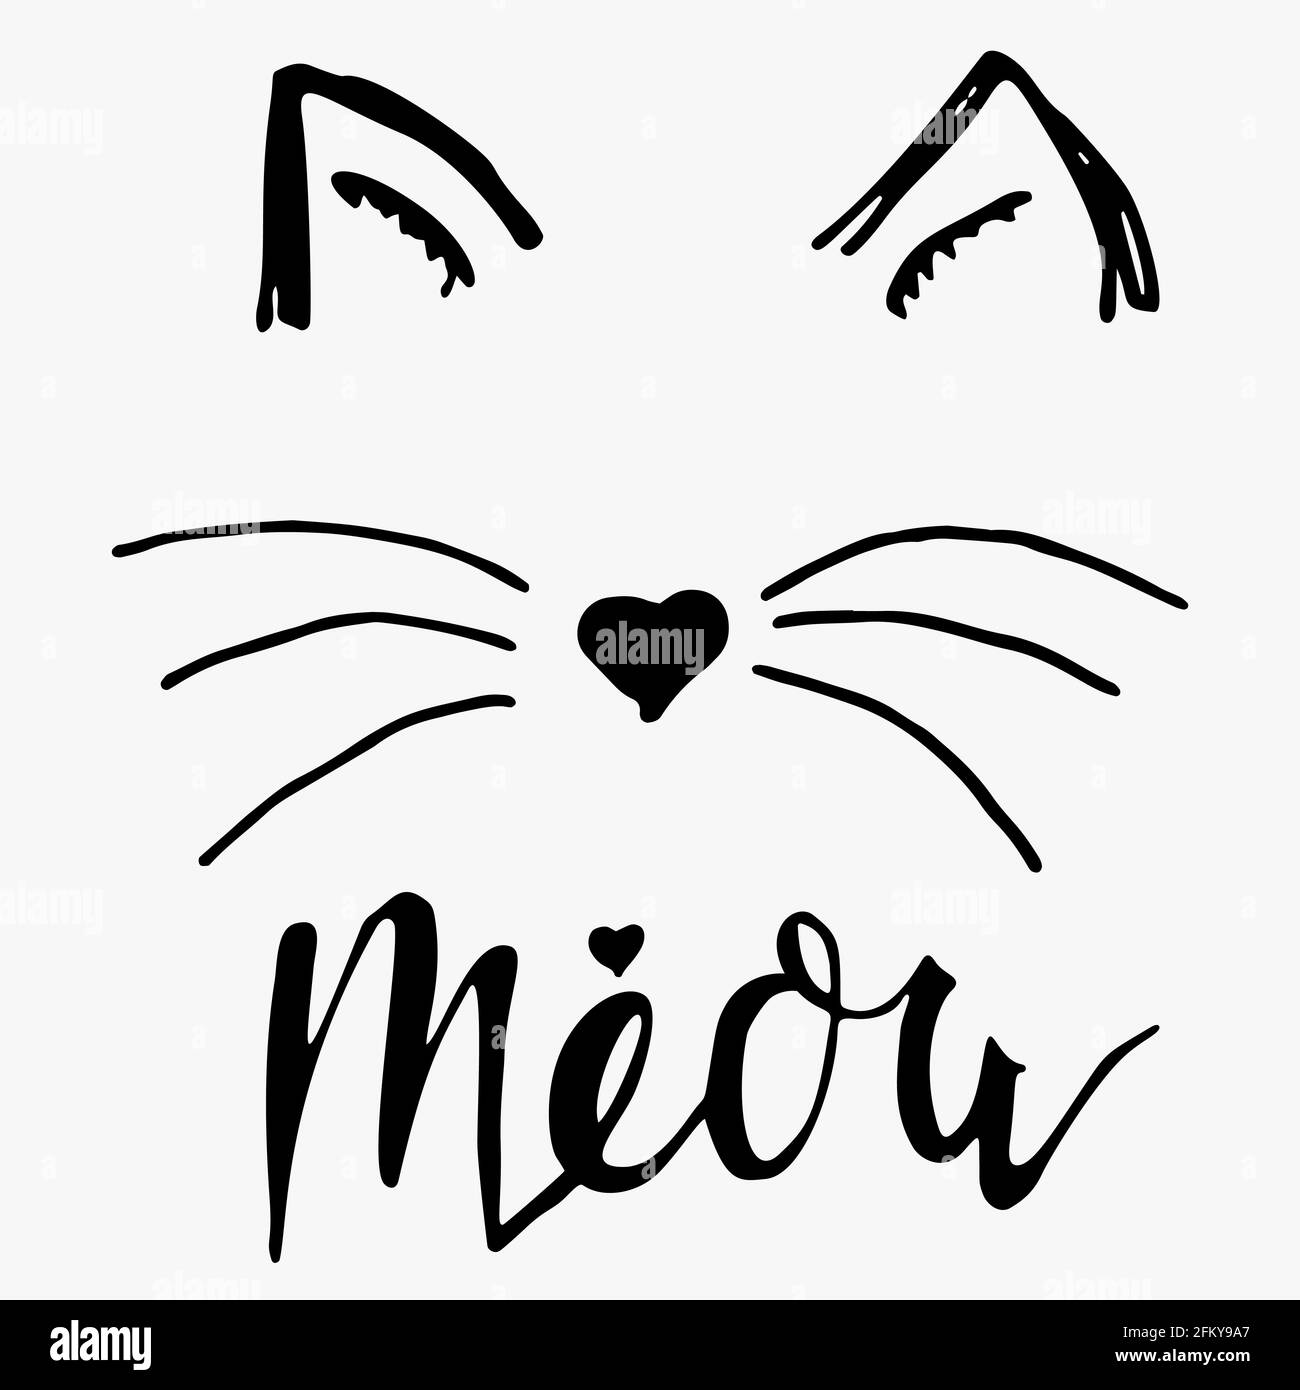 Katzenpfoten-Print. Vector Meow mit Schriftzug - Zeichnung niedlichem Kätzchen Slogan Alamy Stock-Vektorgrafik Poster Skizze Miow schwarzer